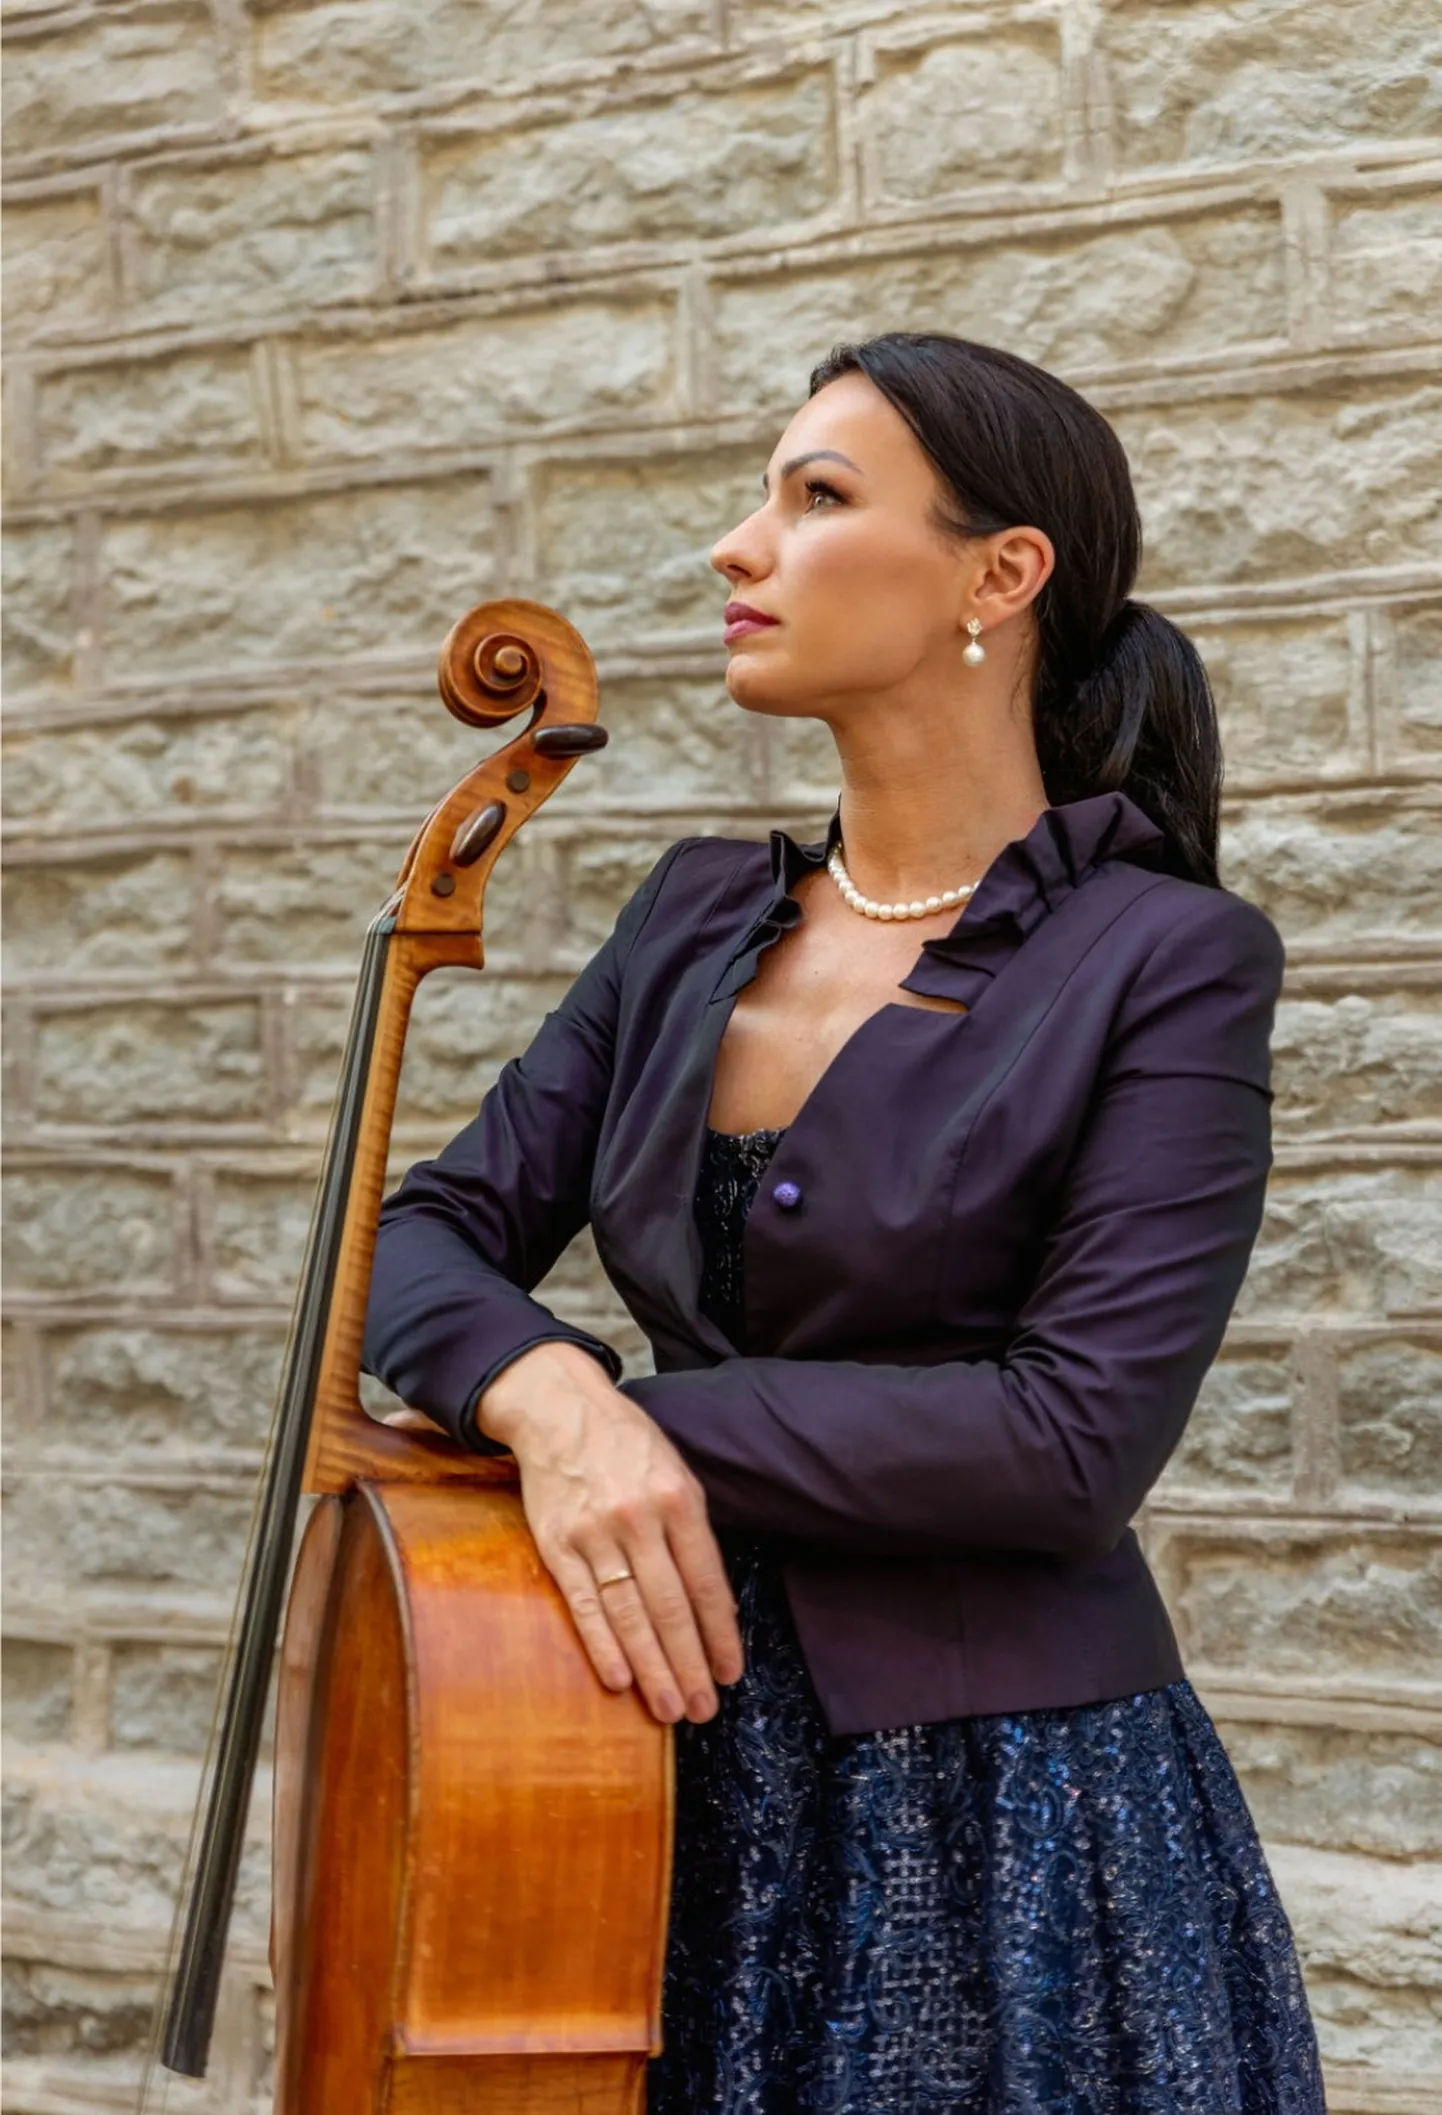 Ühes orkestriga astub Kohtla-Järve rahvapargis üles üle-eestiliste ja rahvusvaheliste konkursside laureaat, tšellist Silvia Ilves.